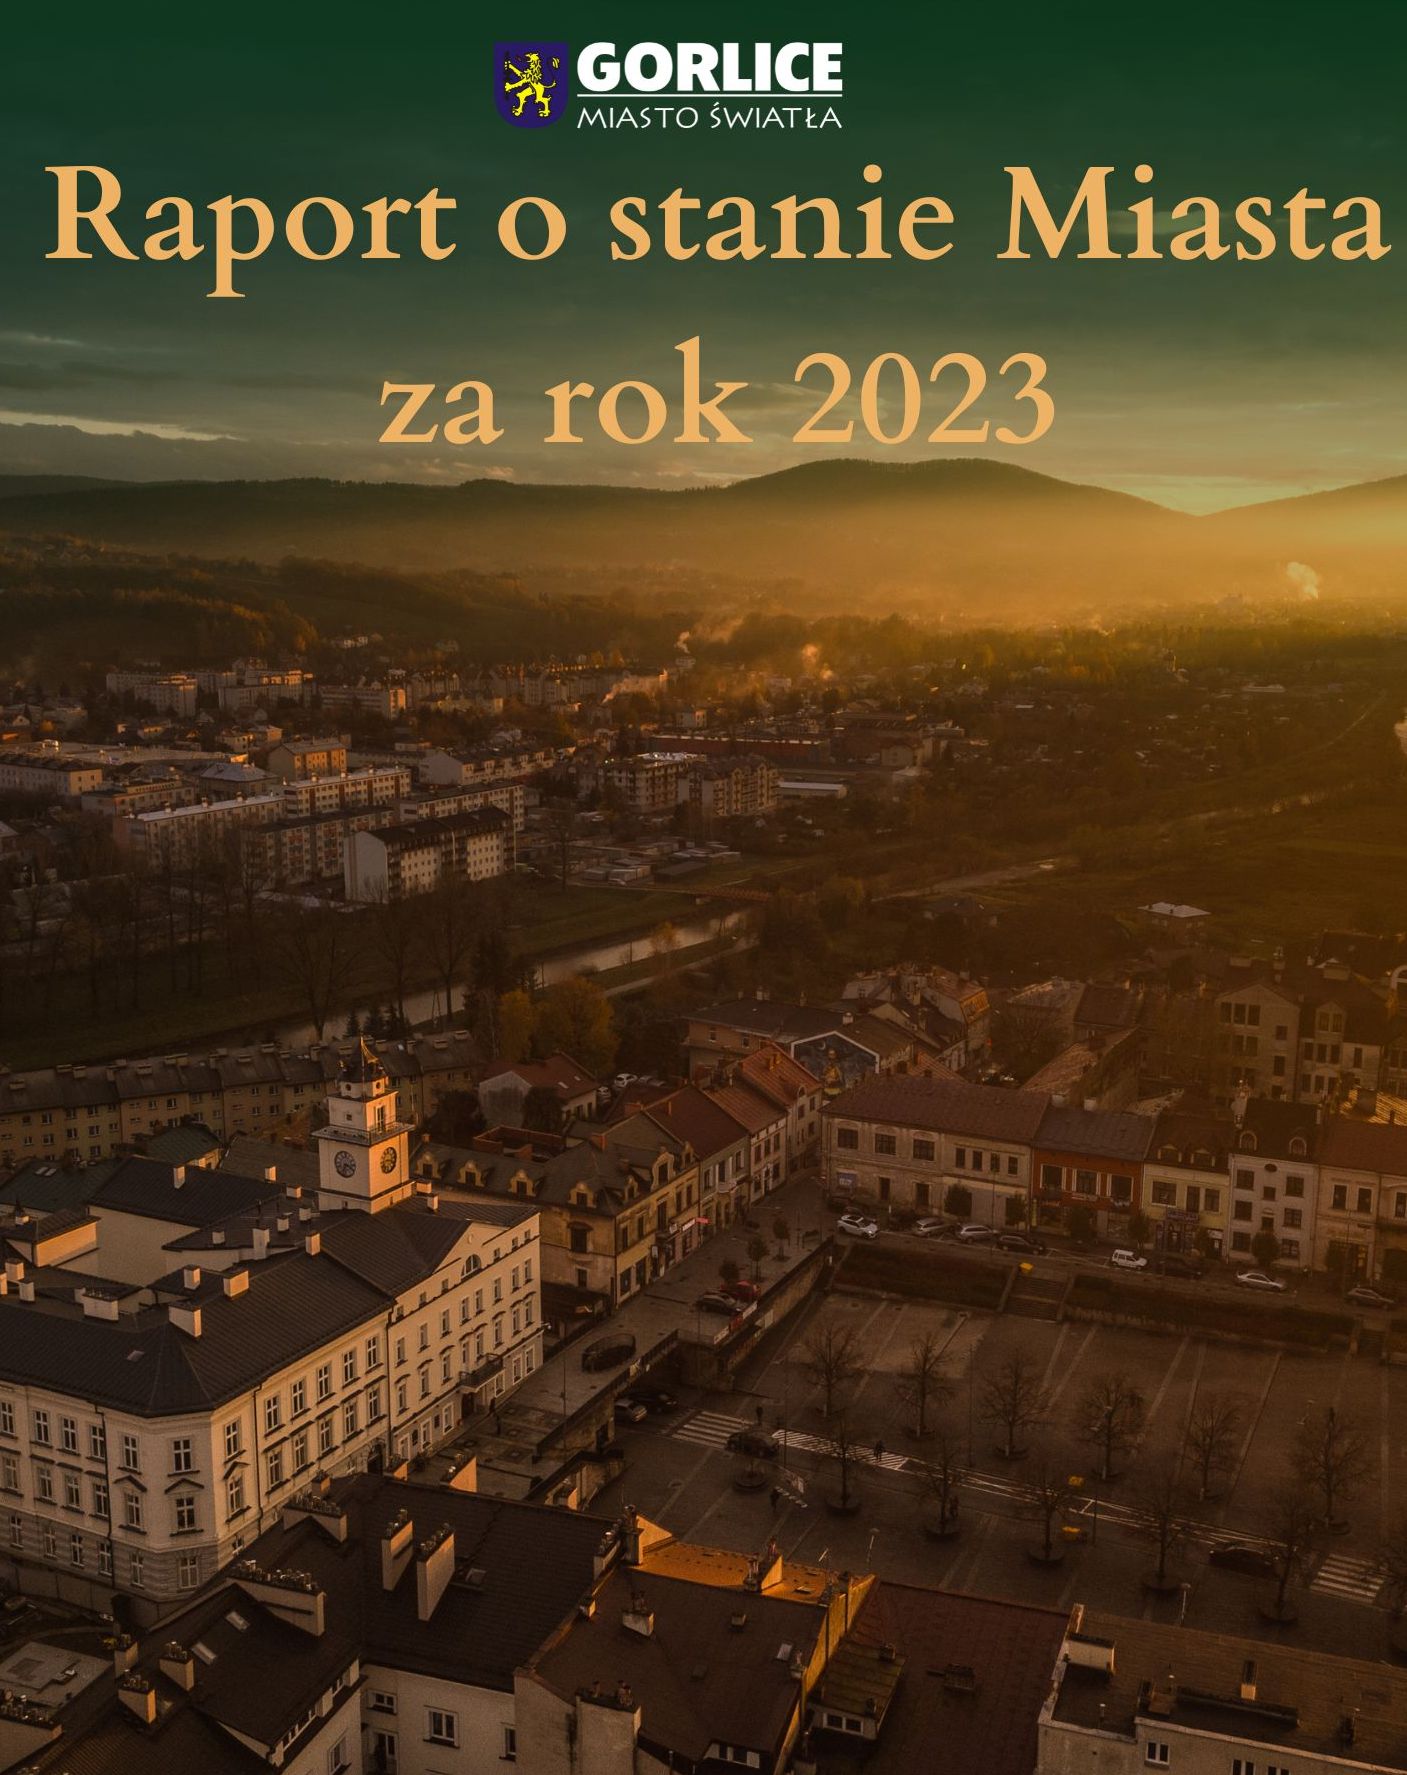 Zdjęcie lotnicze Gorlic z napisem Raport o stanie miasta.